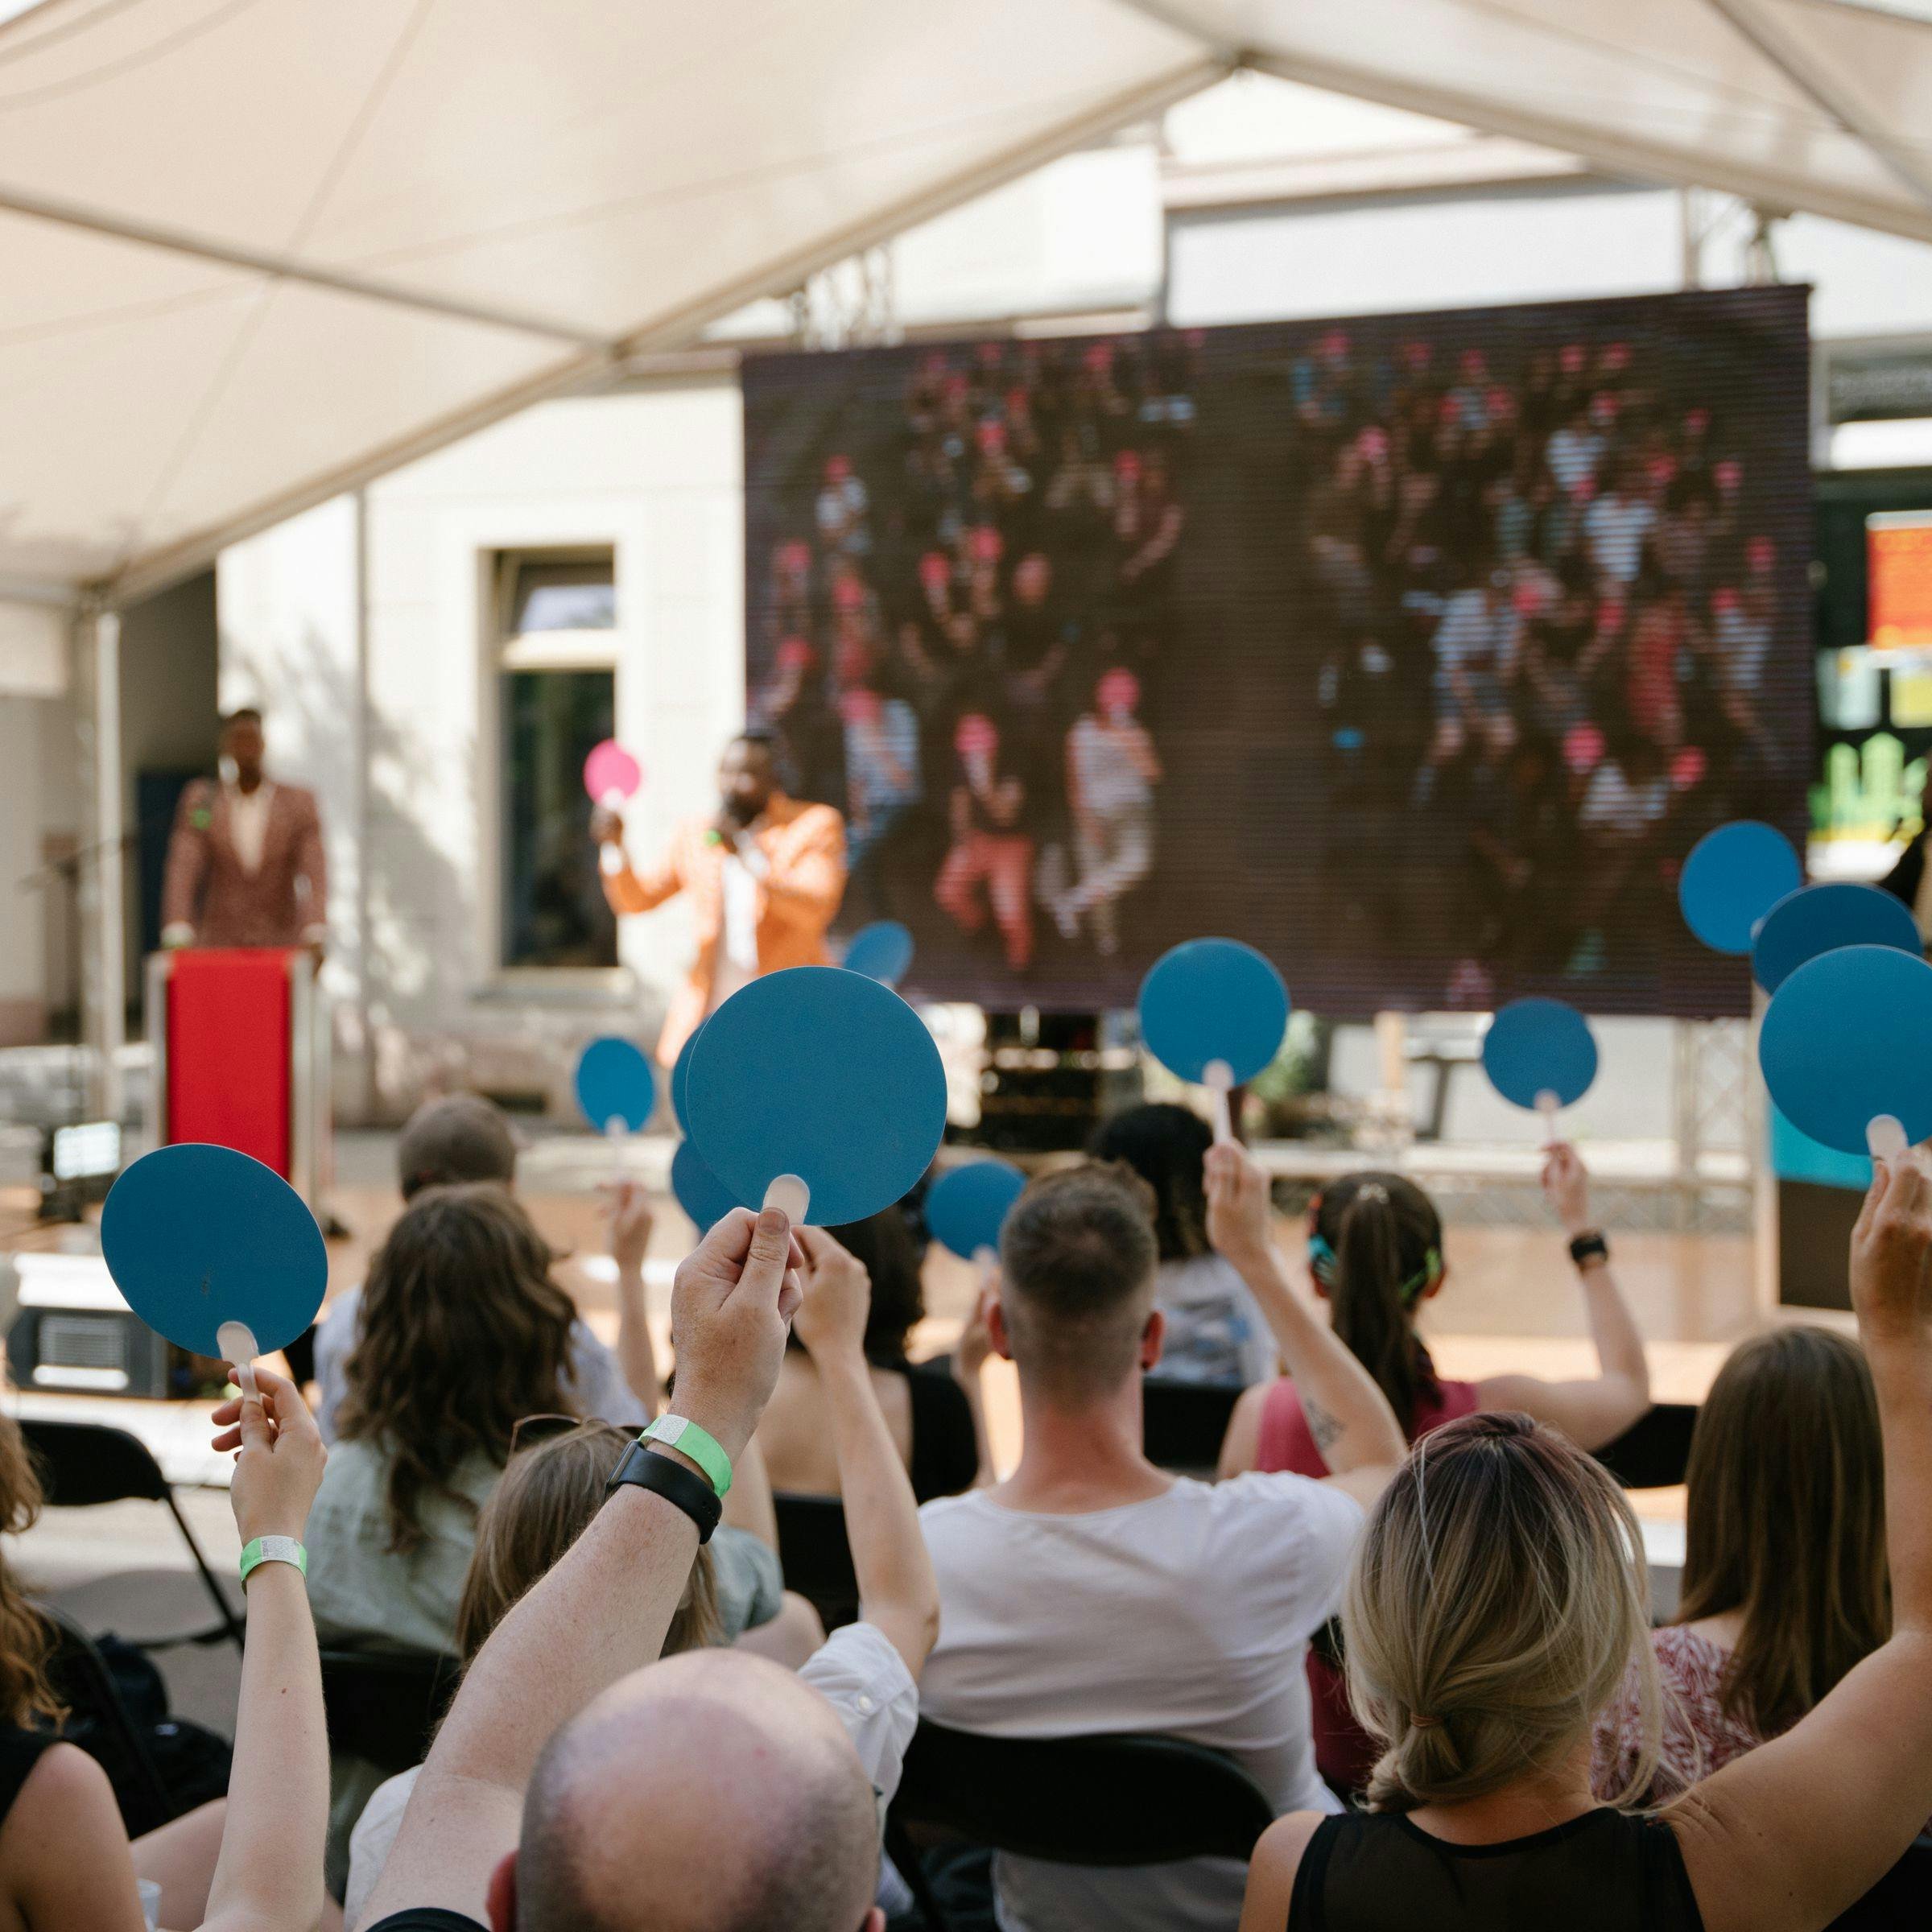 En un formato de discusión al aire libre, la audiencia es fotografiada desde atrás sosteniendo tarjetas azules. Al fondo se puede ver el escenario con los presentadores.